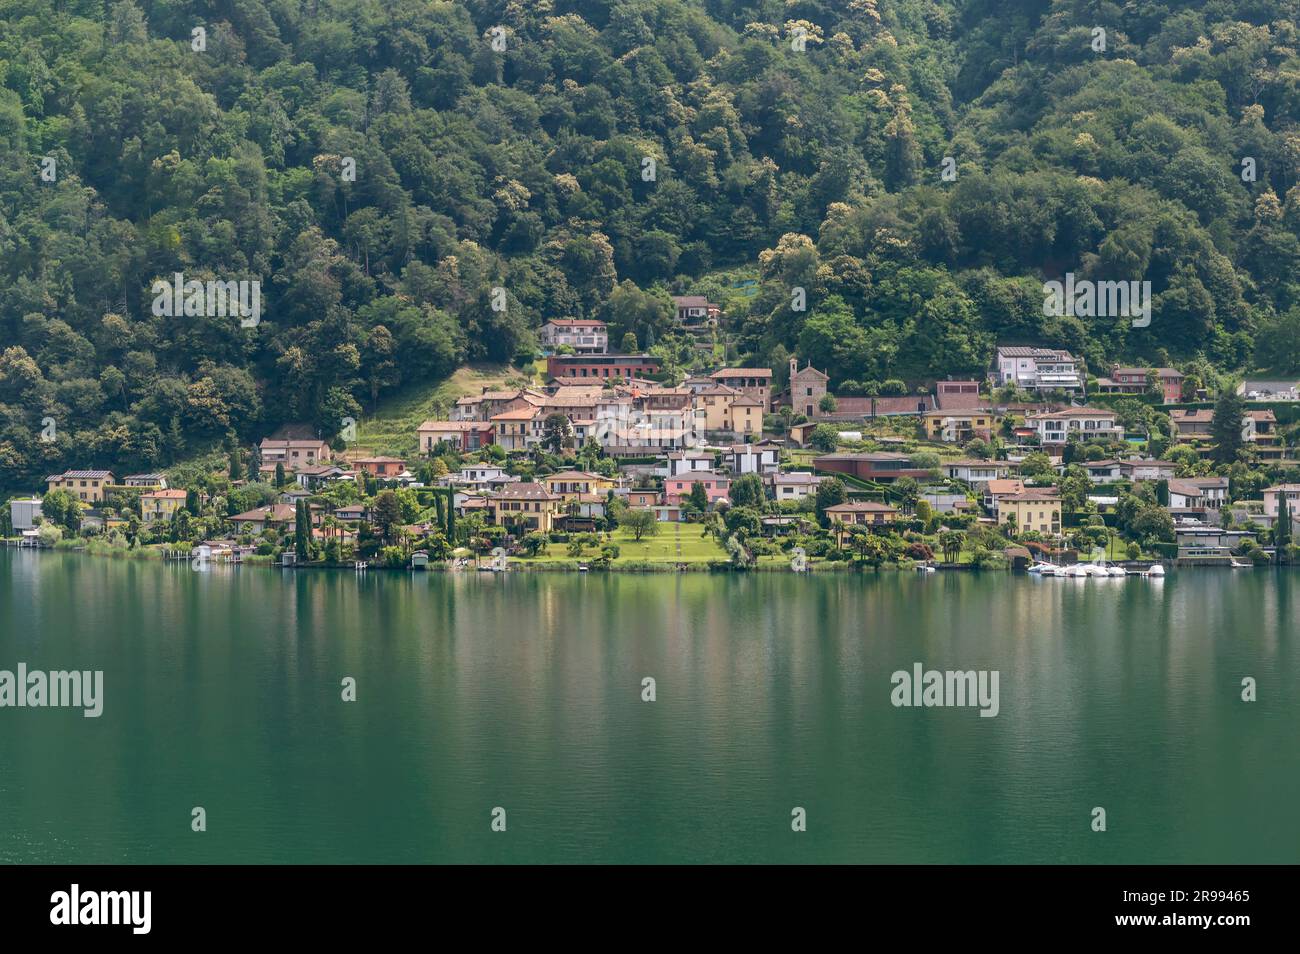 Vista panoramica di Carabietta, frazione del comune svizzero di Collina d'Oro, nel Canton Ticino (distretto di Lugano), Svizzera Foto Stock